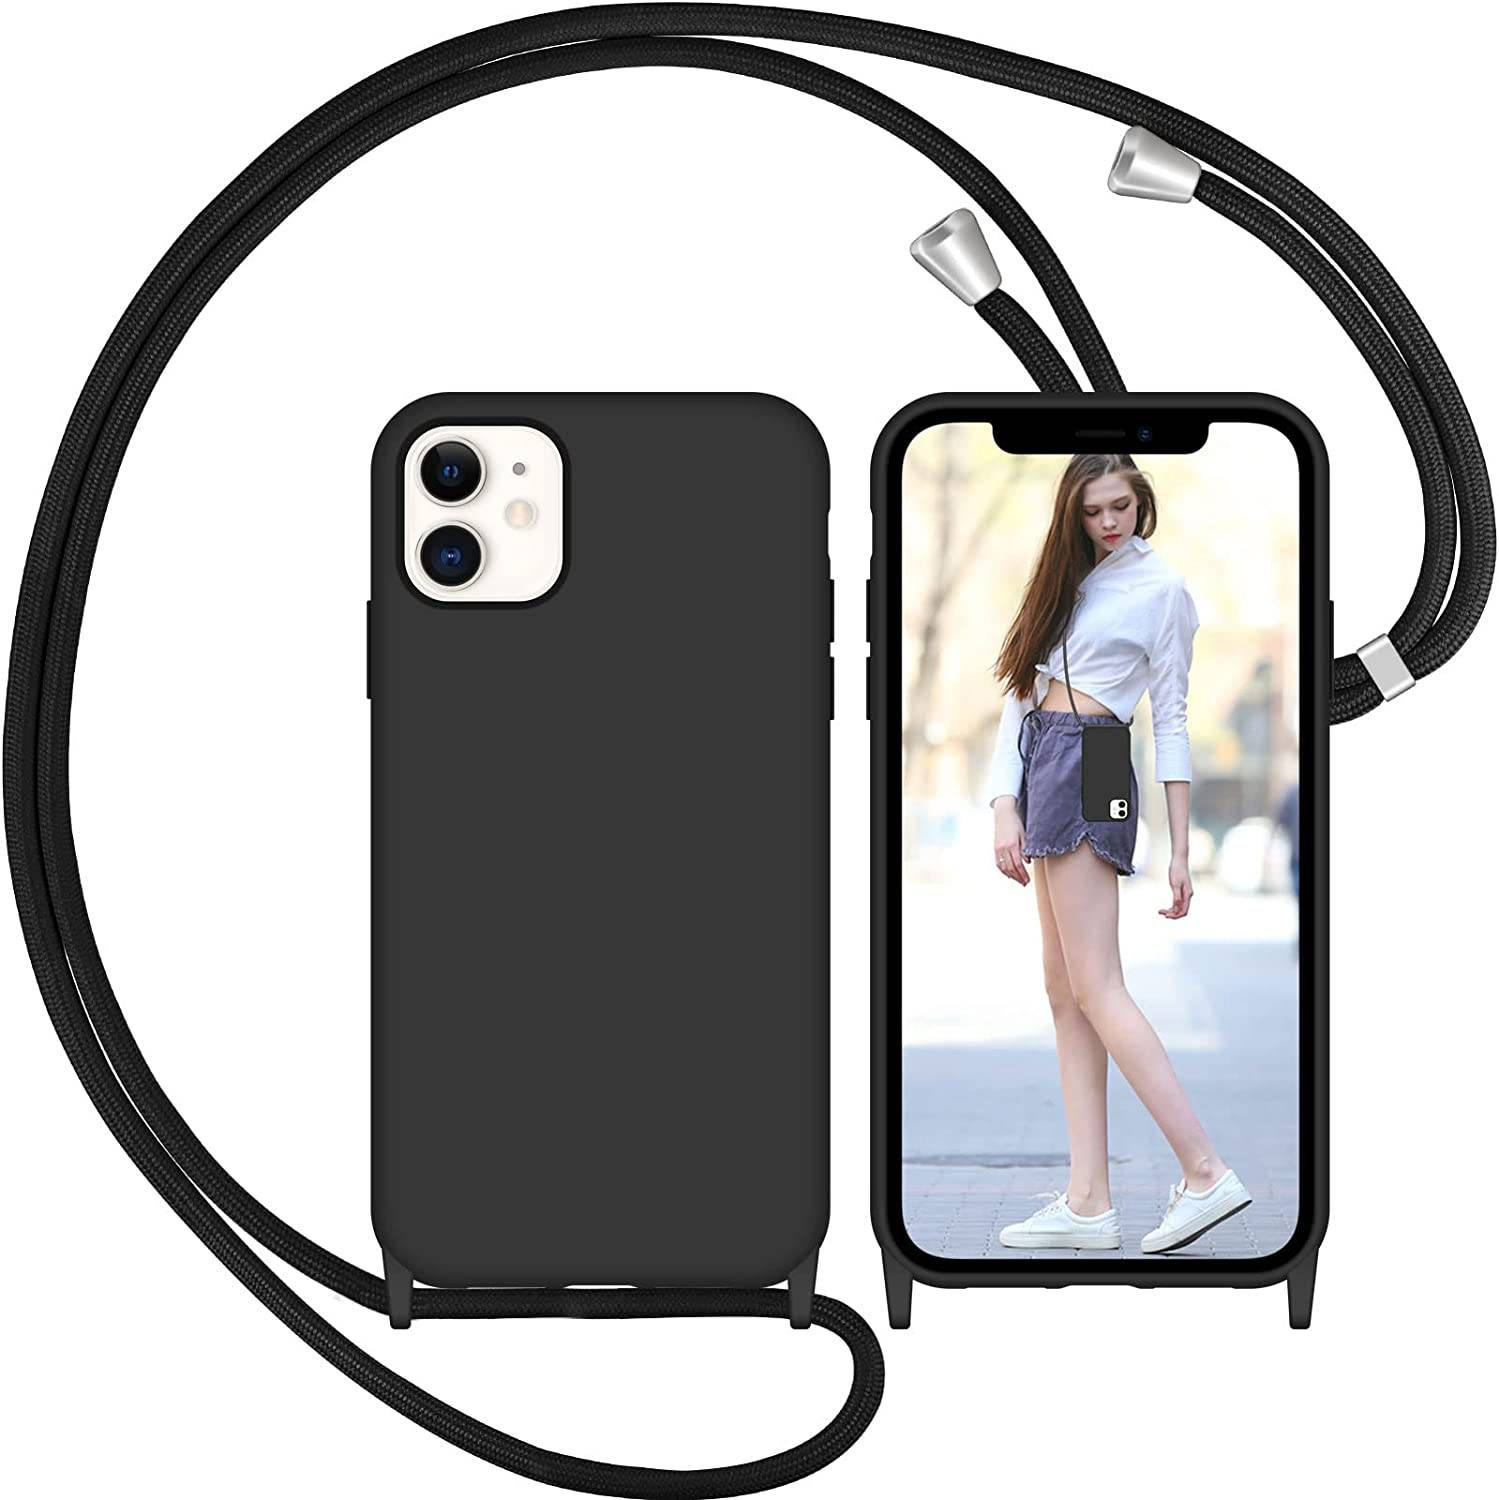 Coque avec cordon pour iPhone 11 - Protection en Silicone Case - Coque tour de cou, bandoulière iPhone - Coques&Co